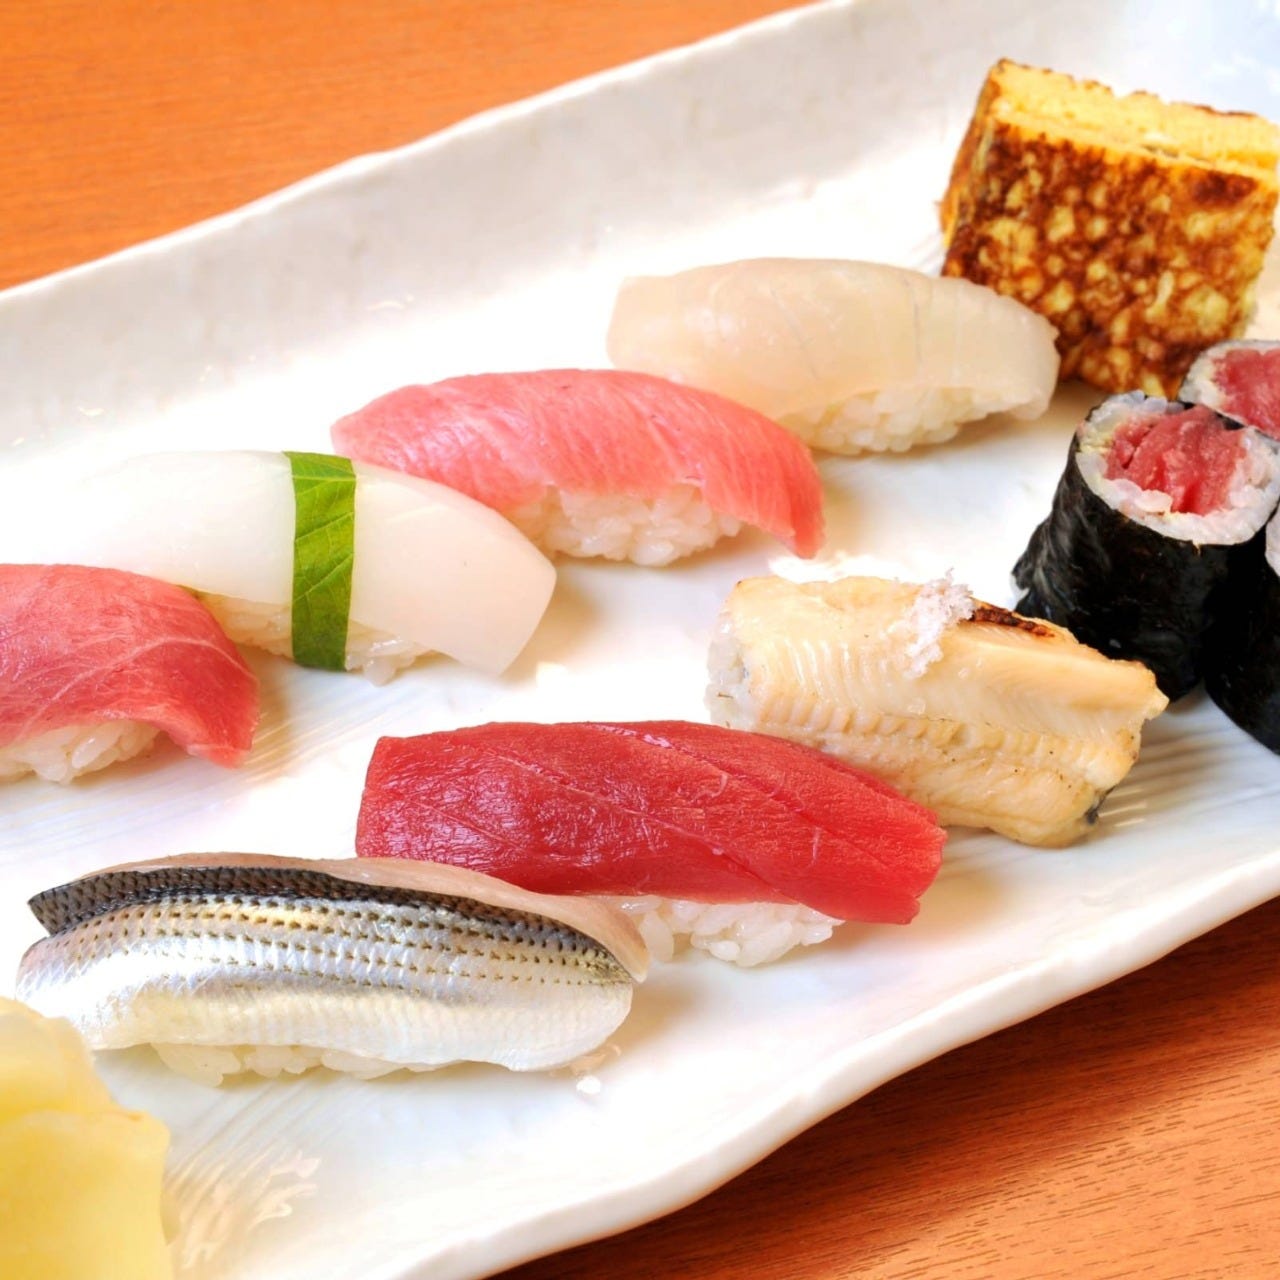 繁乃鮨相片 三越前 壽司 Gurunavi 日本美食餐廳指南